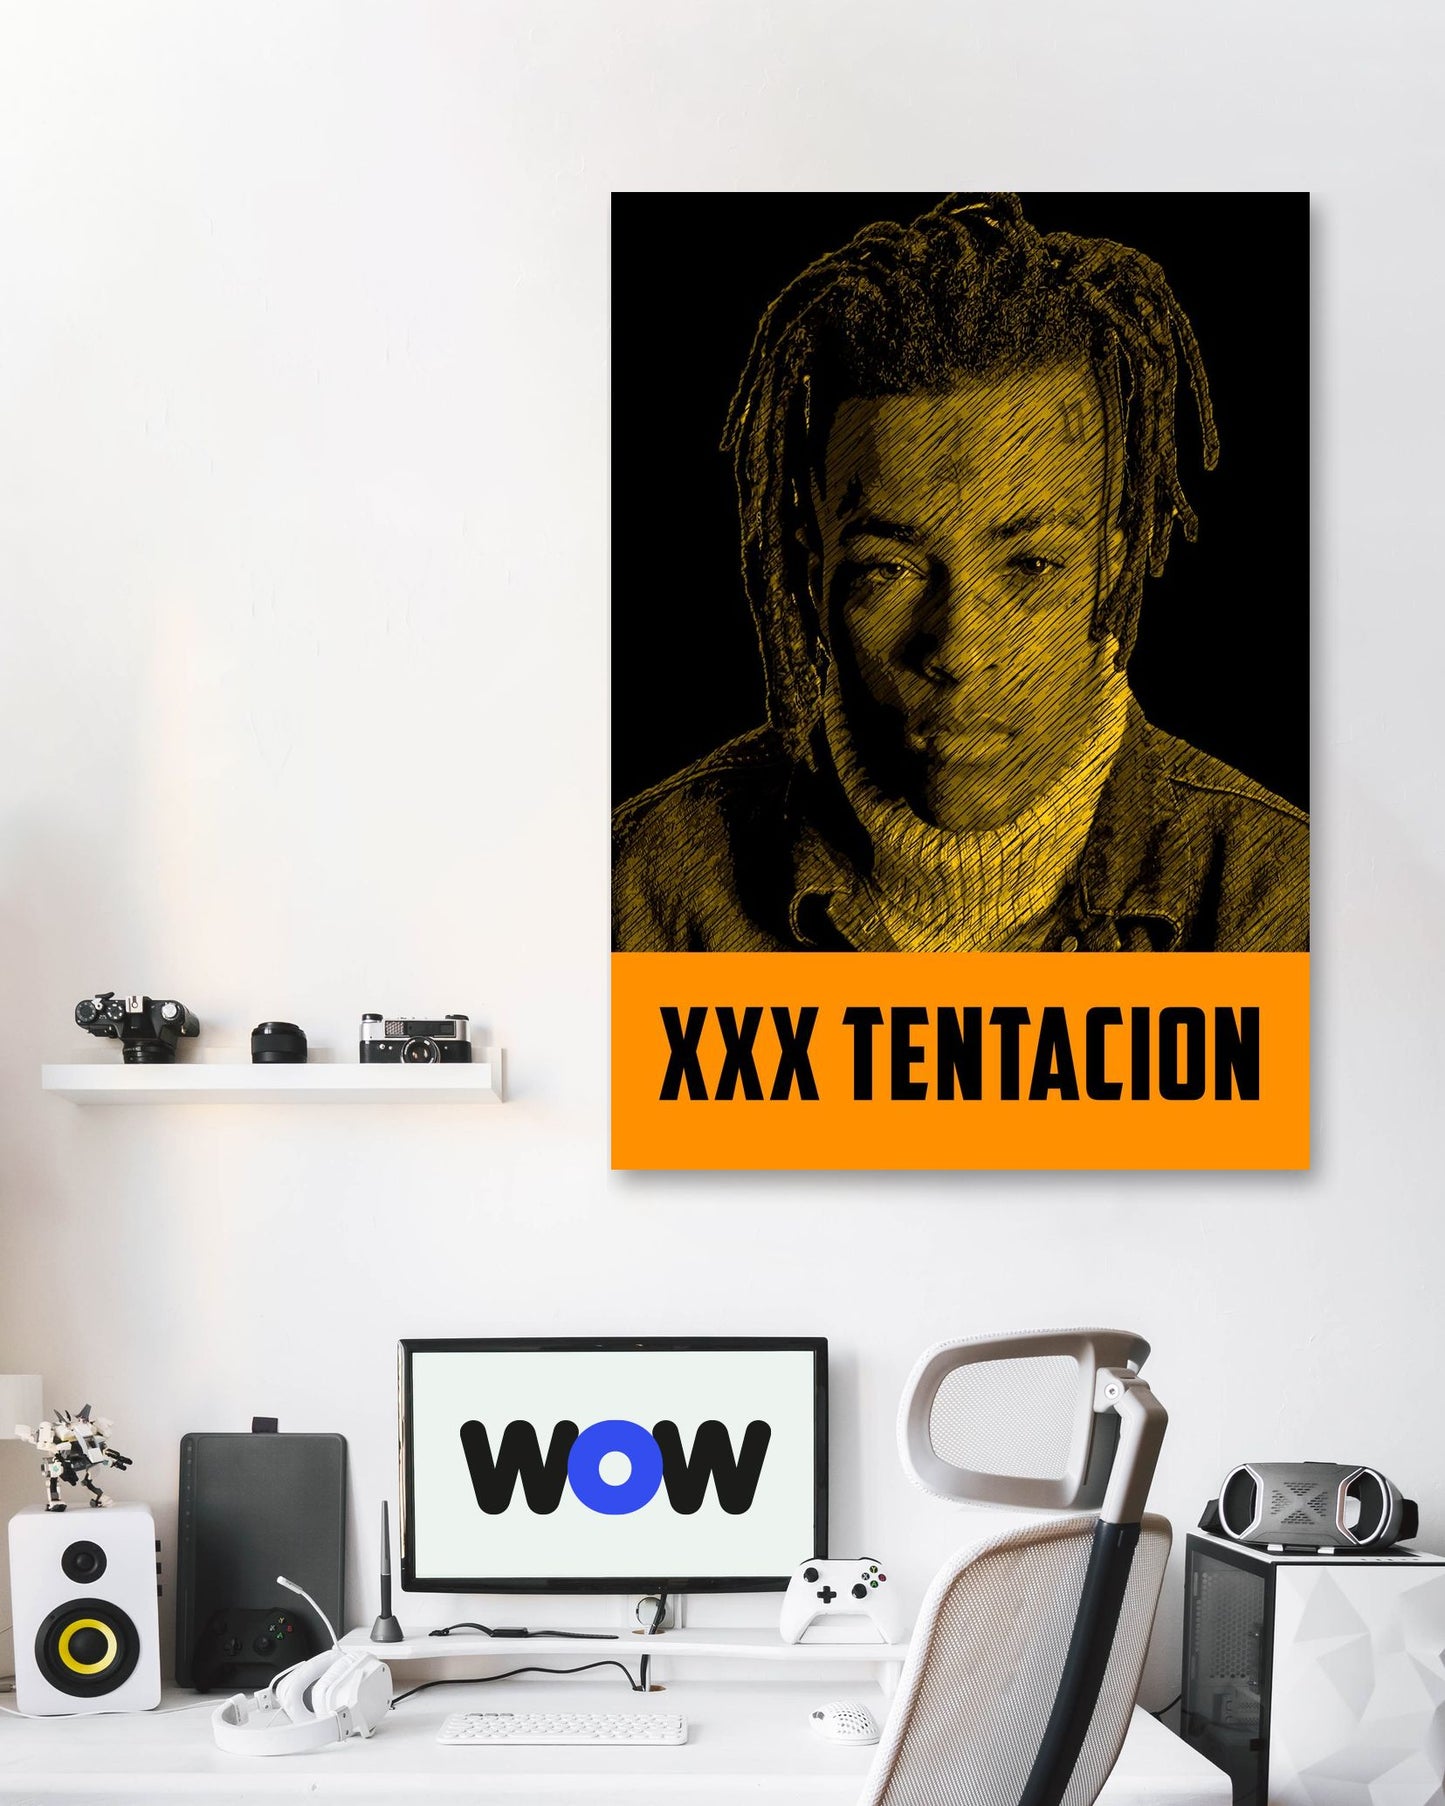 XXXTENTACION - @LegendArt